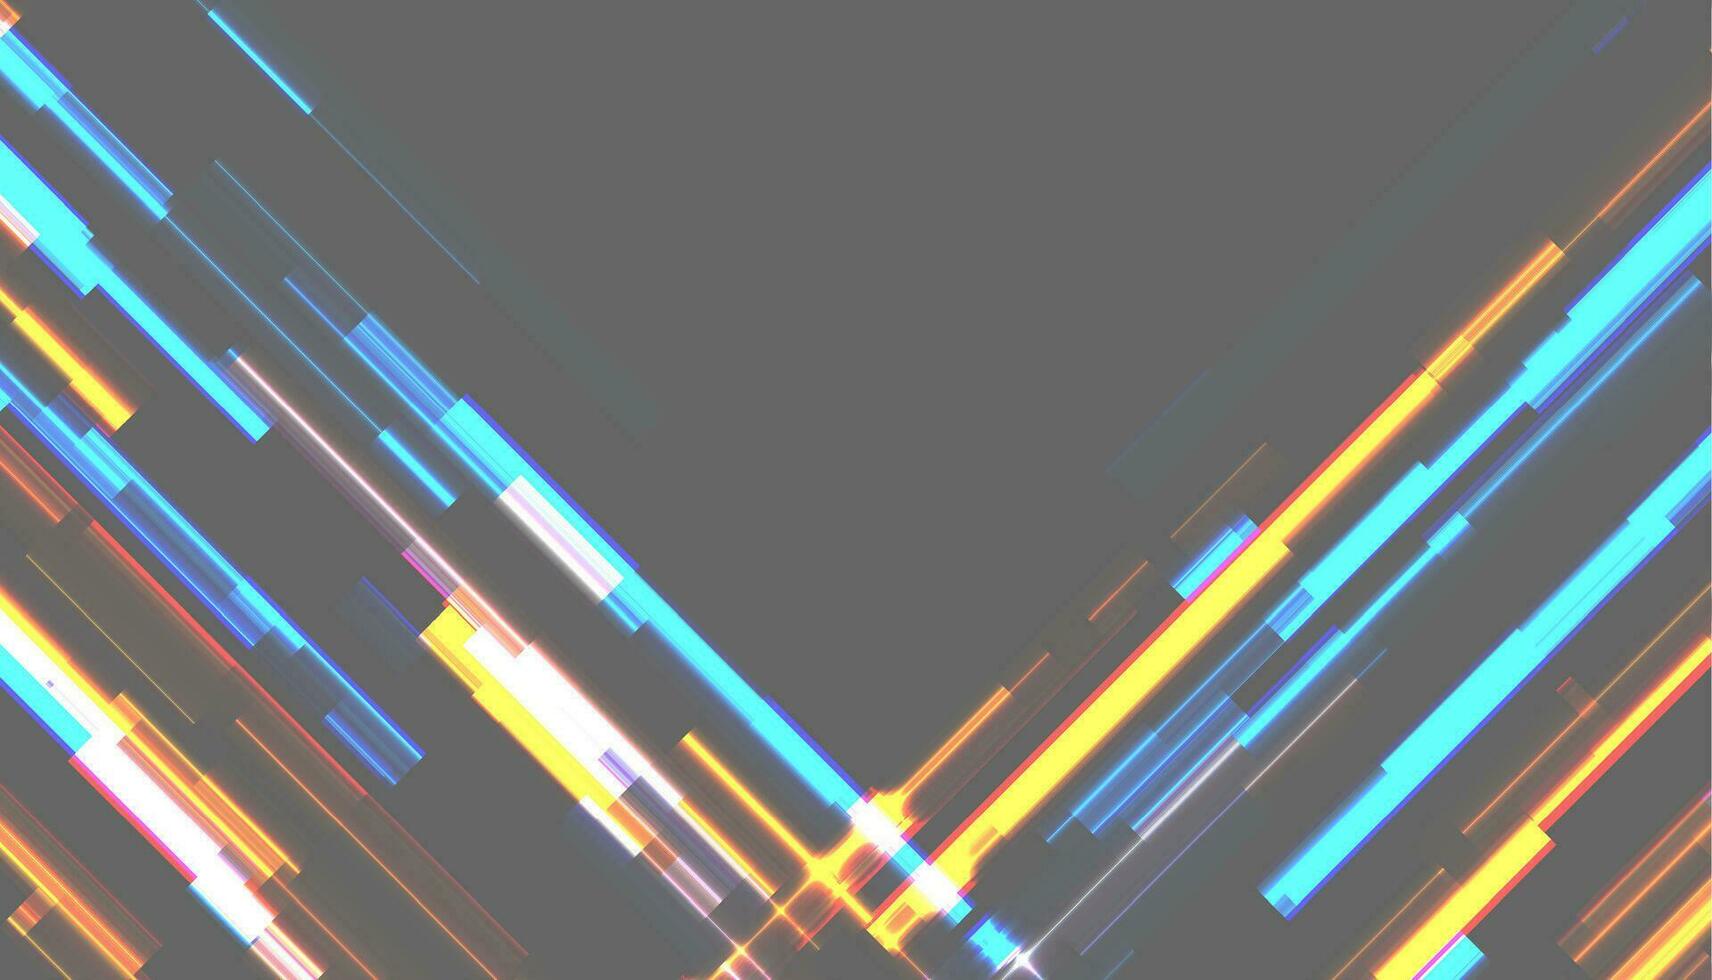 astratto Tech raggiante neon Linee vettore sfondo con problema tecnico effetto